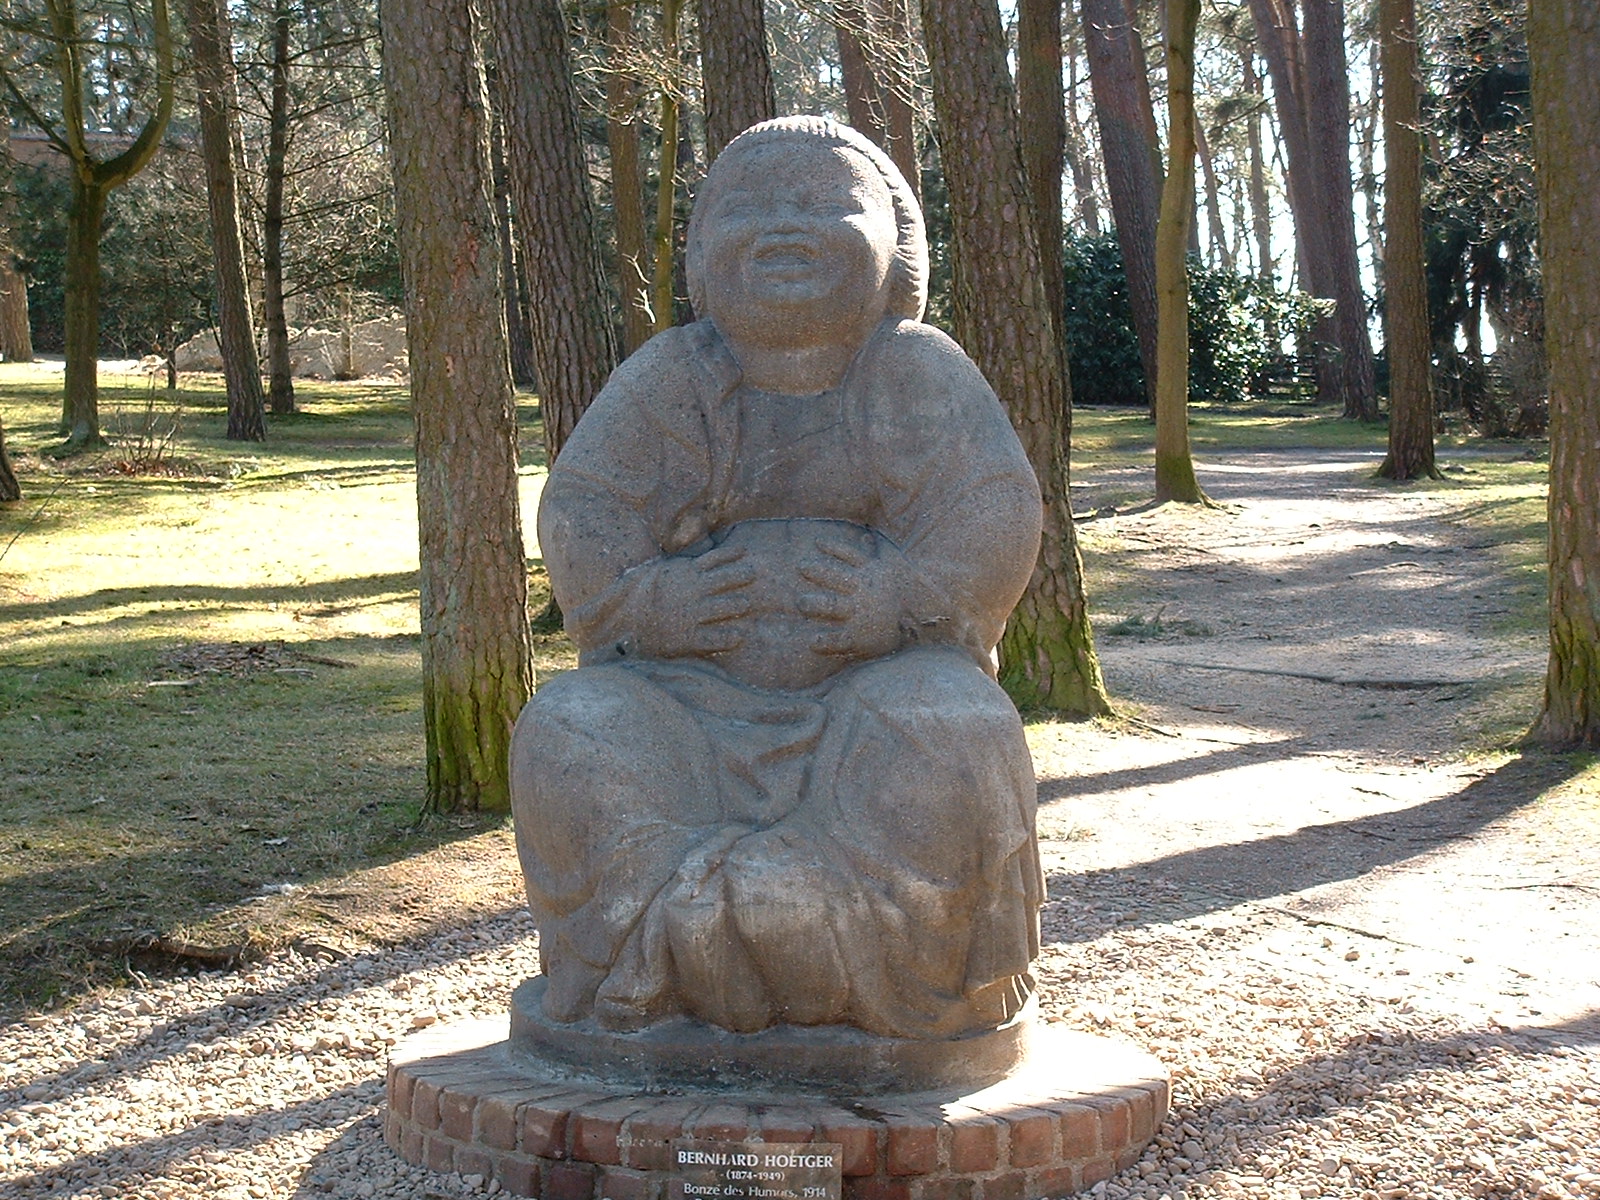 Der lachende Buddha auf dem Weg vom Parkplatz zum Kaffee Verrückt. Bronze Skulptur von Bernhard Hoetger